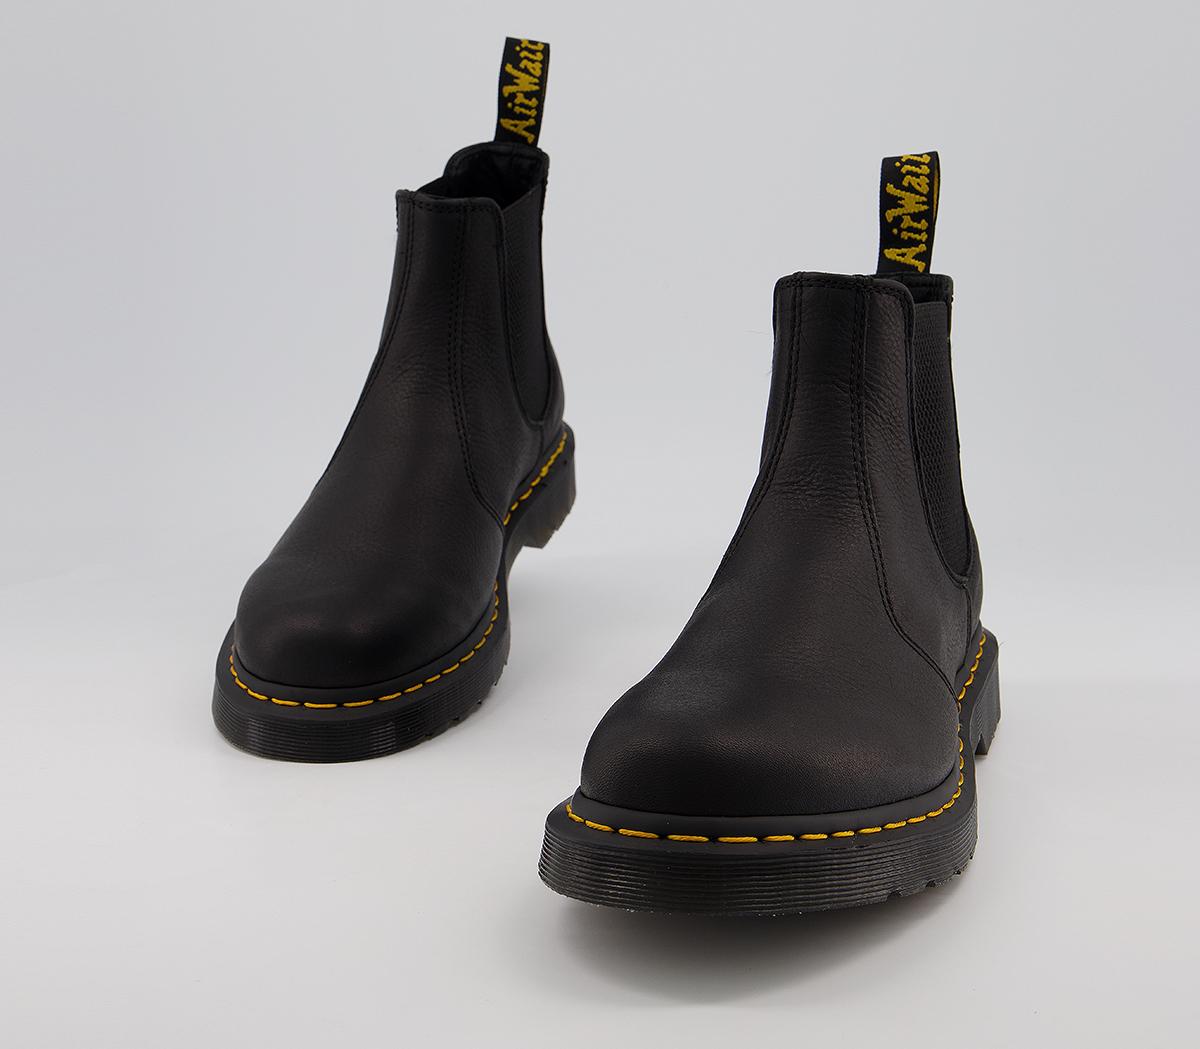 Dr. Martens 2976 Chelsea Boots Black Ambassador - Men’s Boots